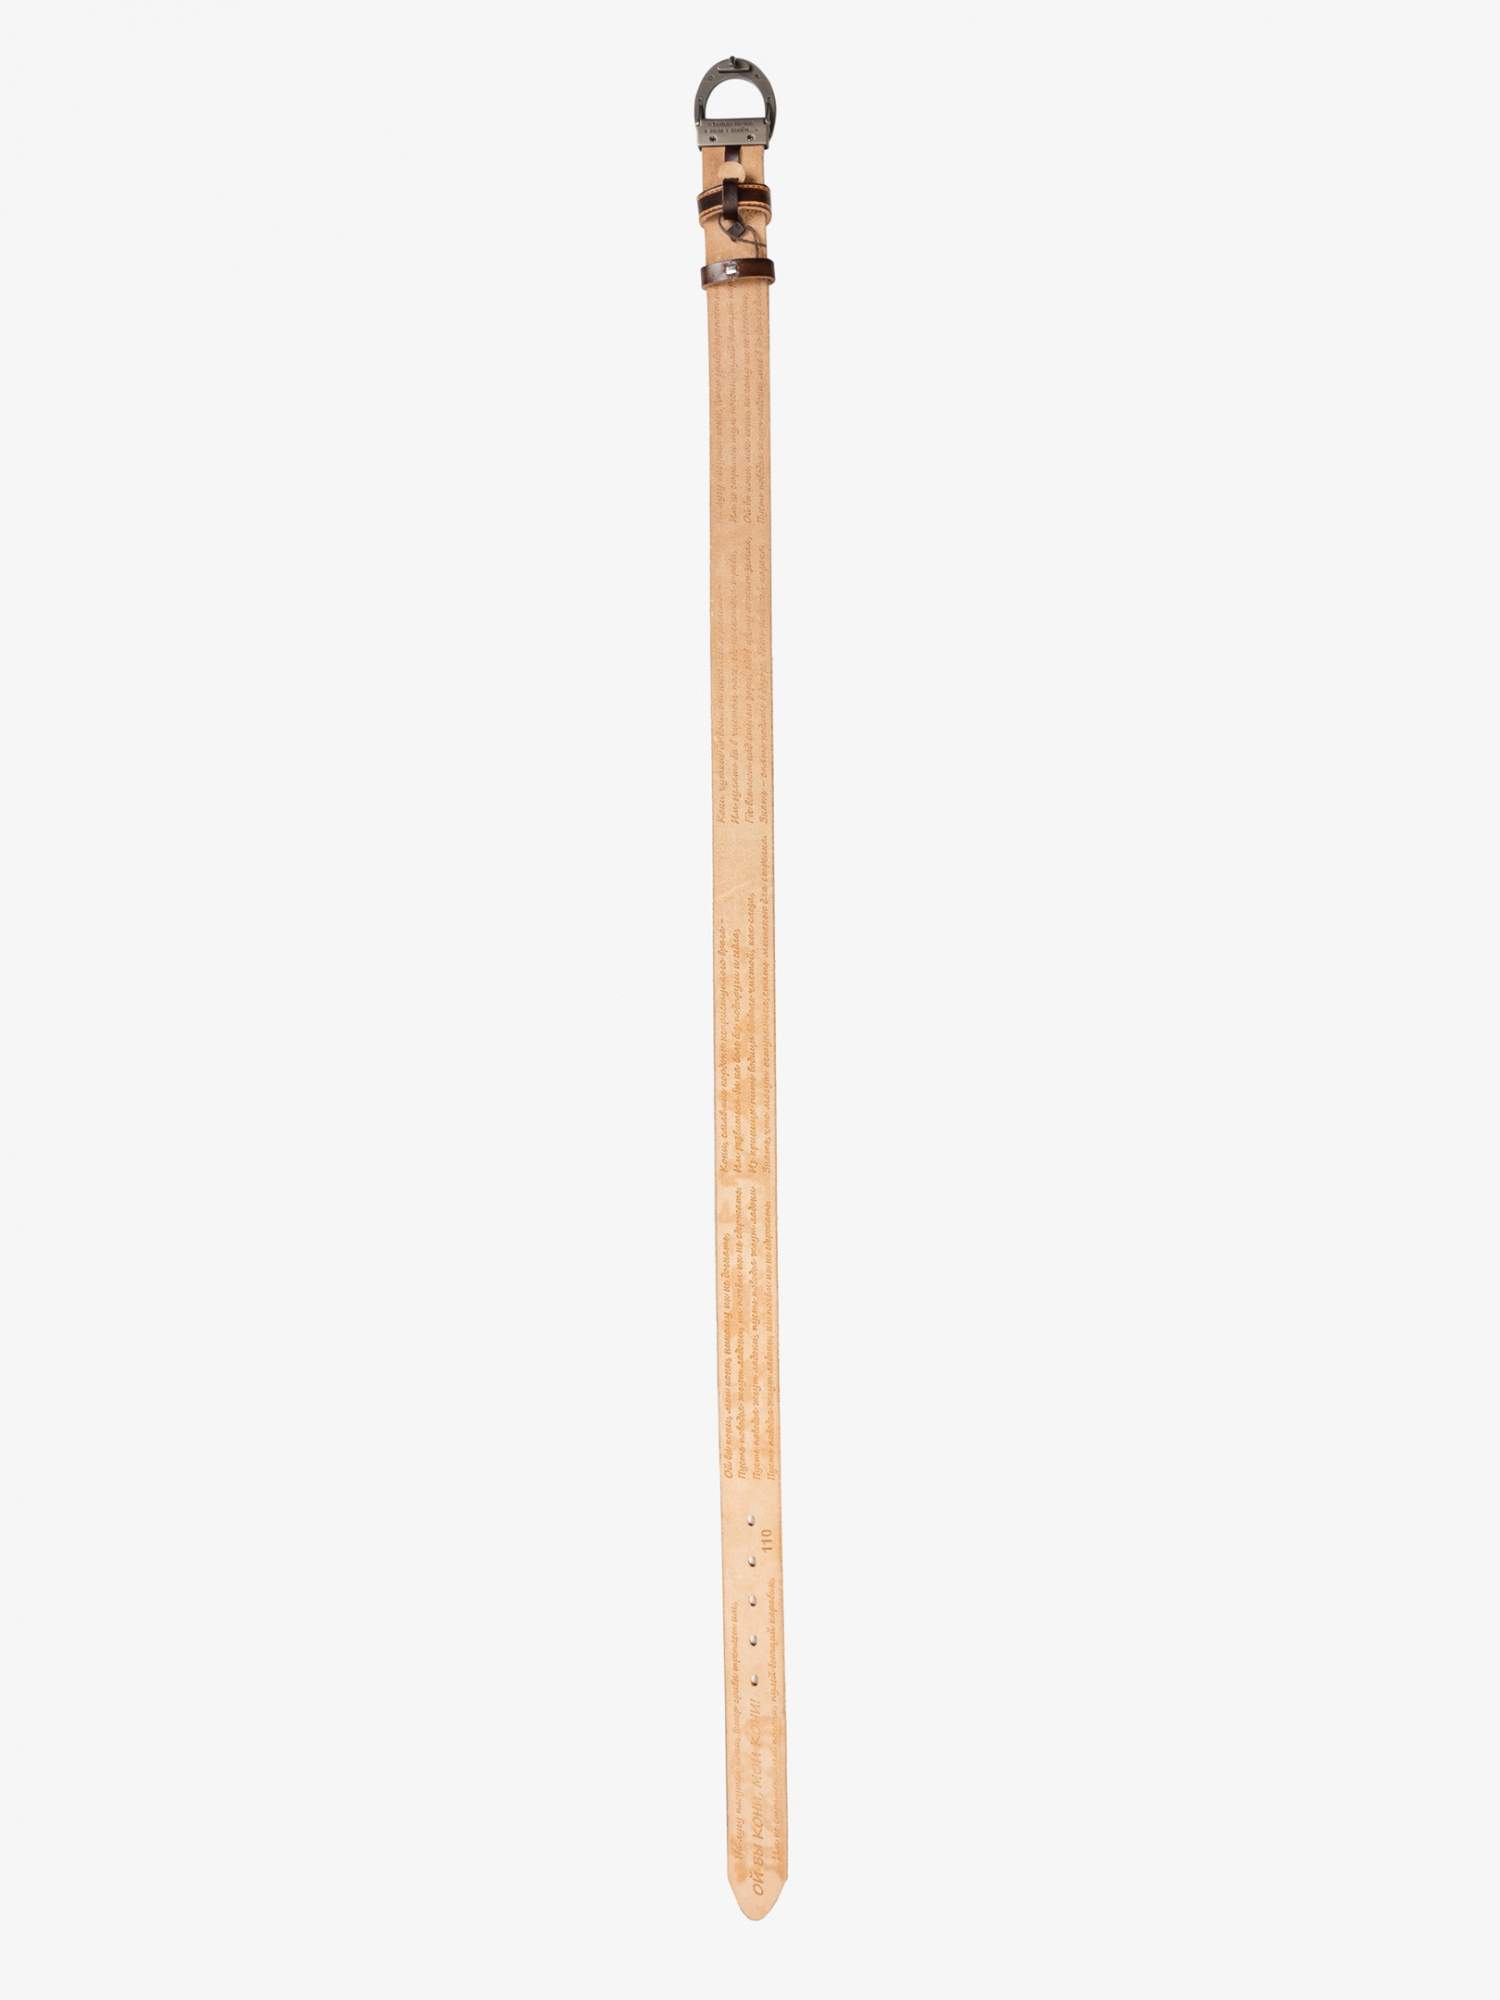 Ремень мужской Великоросс РКVK-27 коричневый, 110 см